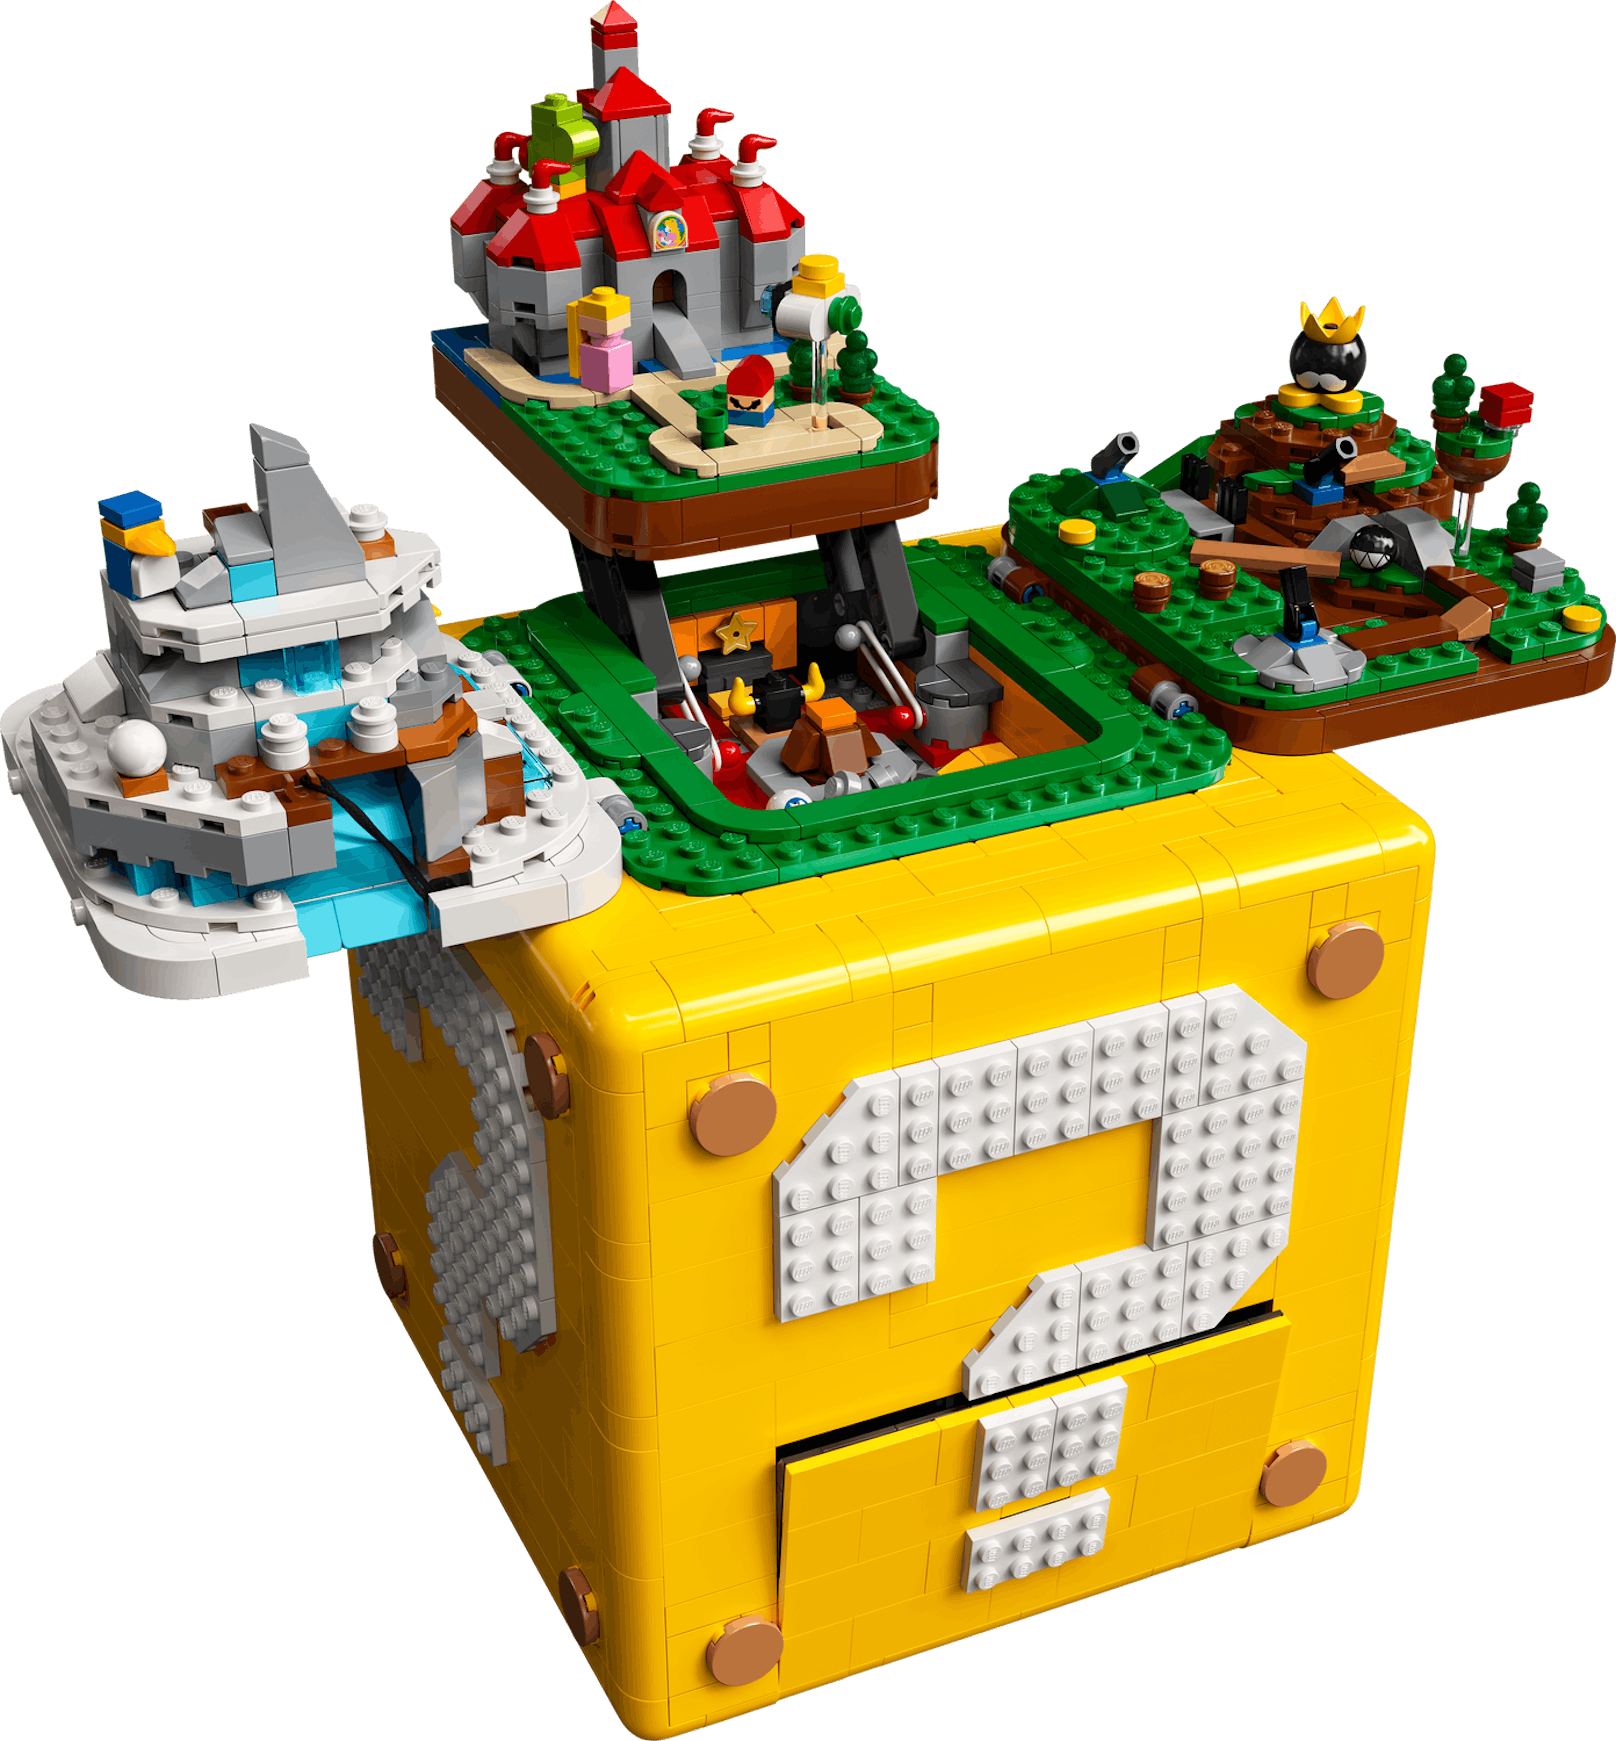 2.046 Teile, 170 Euro, ab 1. Oktober exklusiv in den LEGO Stores und auf LEGO.com erhältlich.